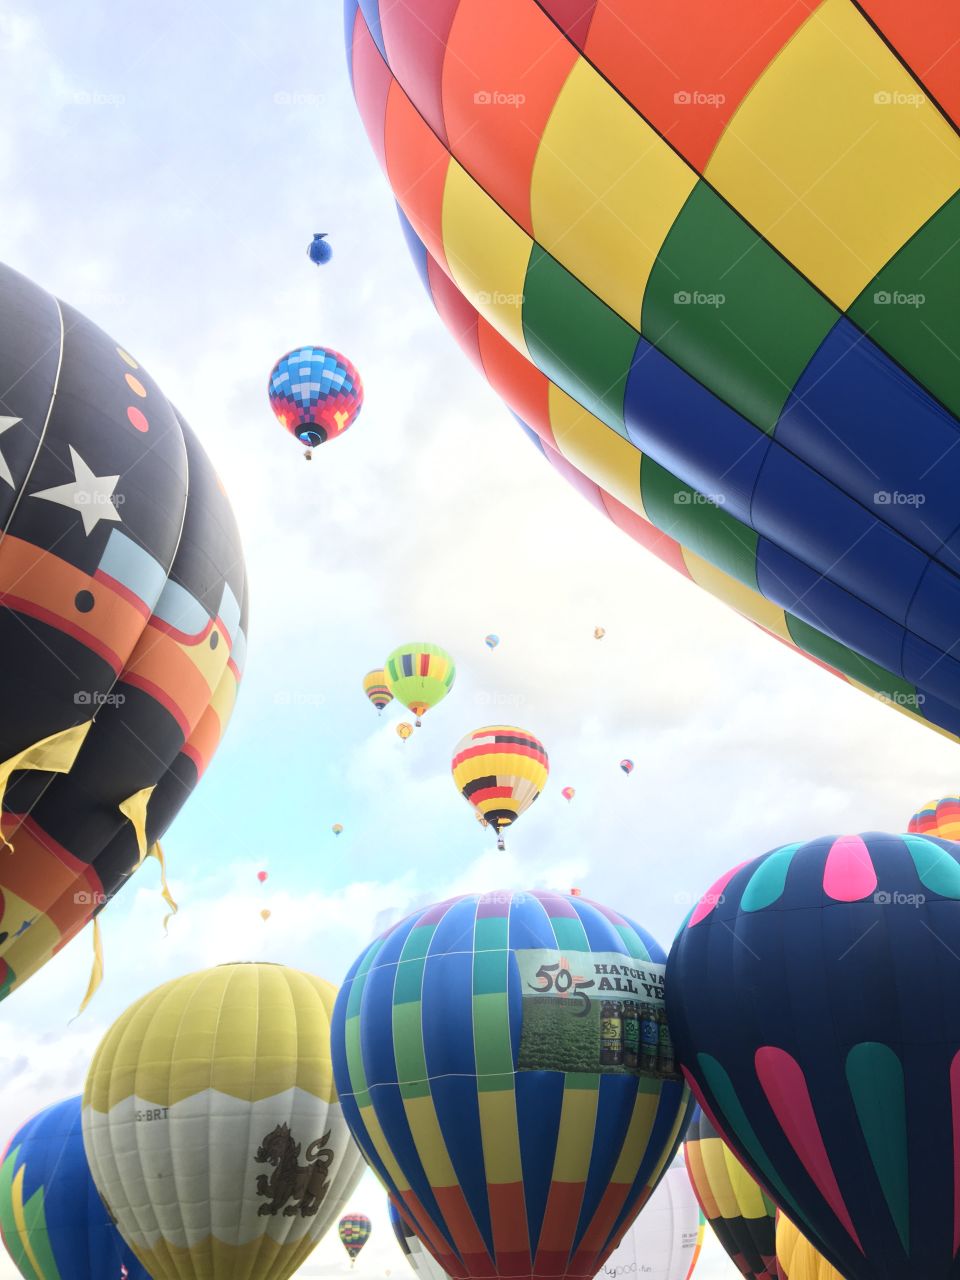 Hot Air Balloons - Albuquerque Balloon Fiesta 2018